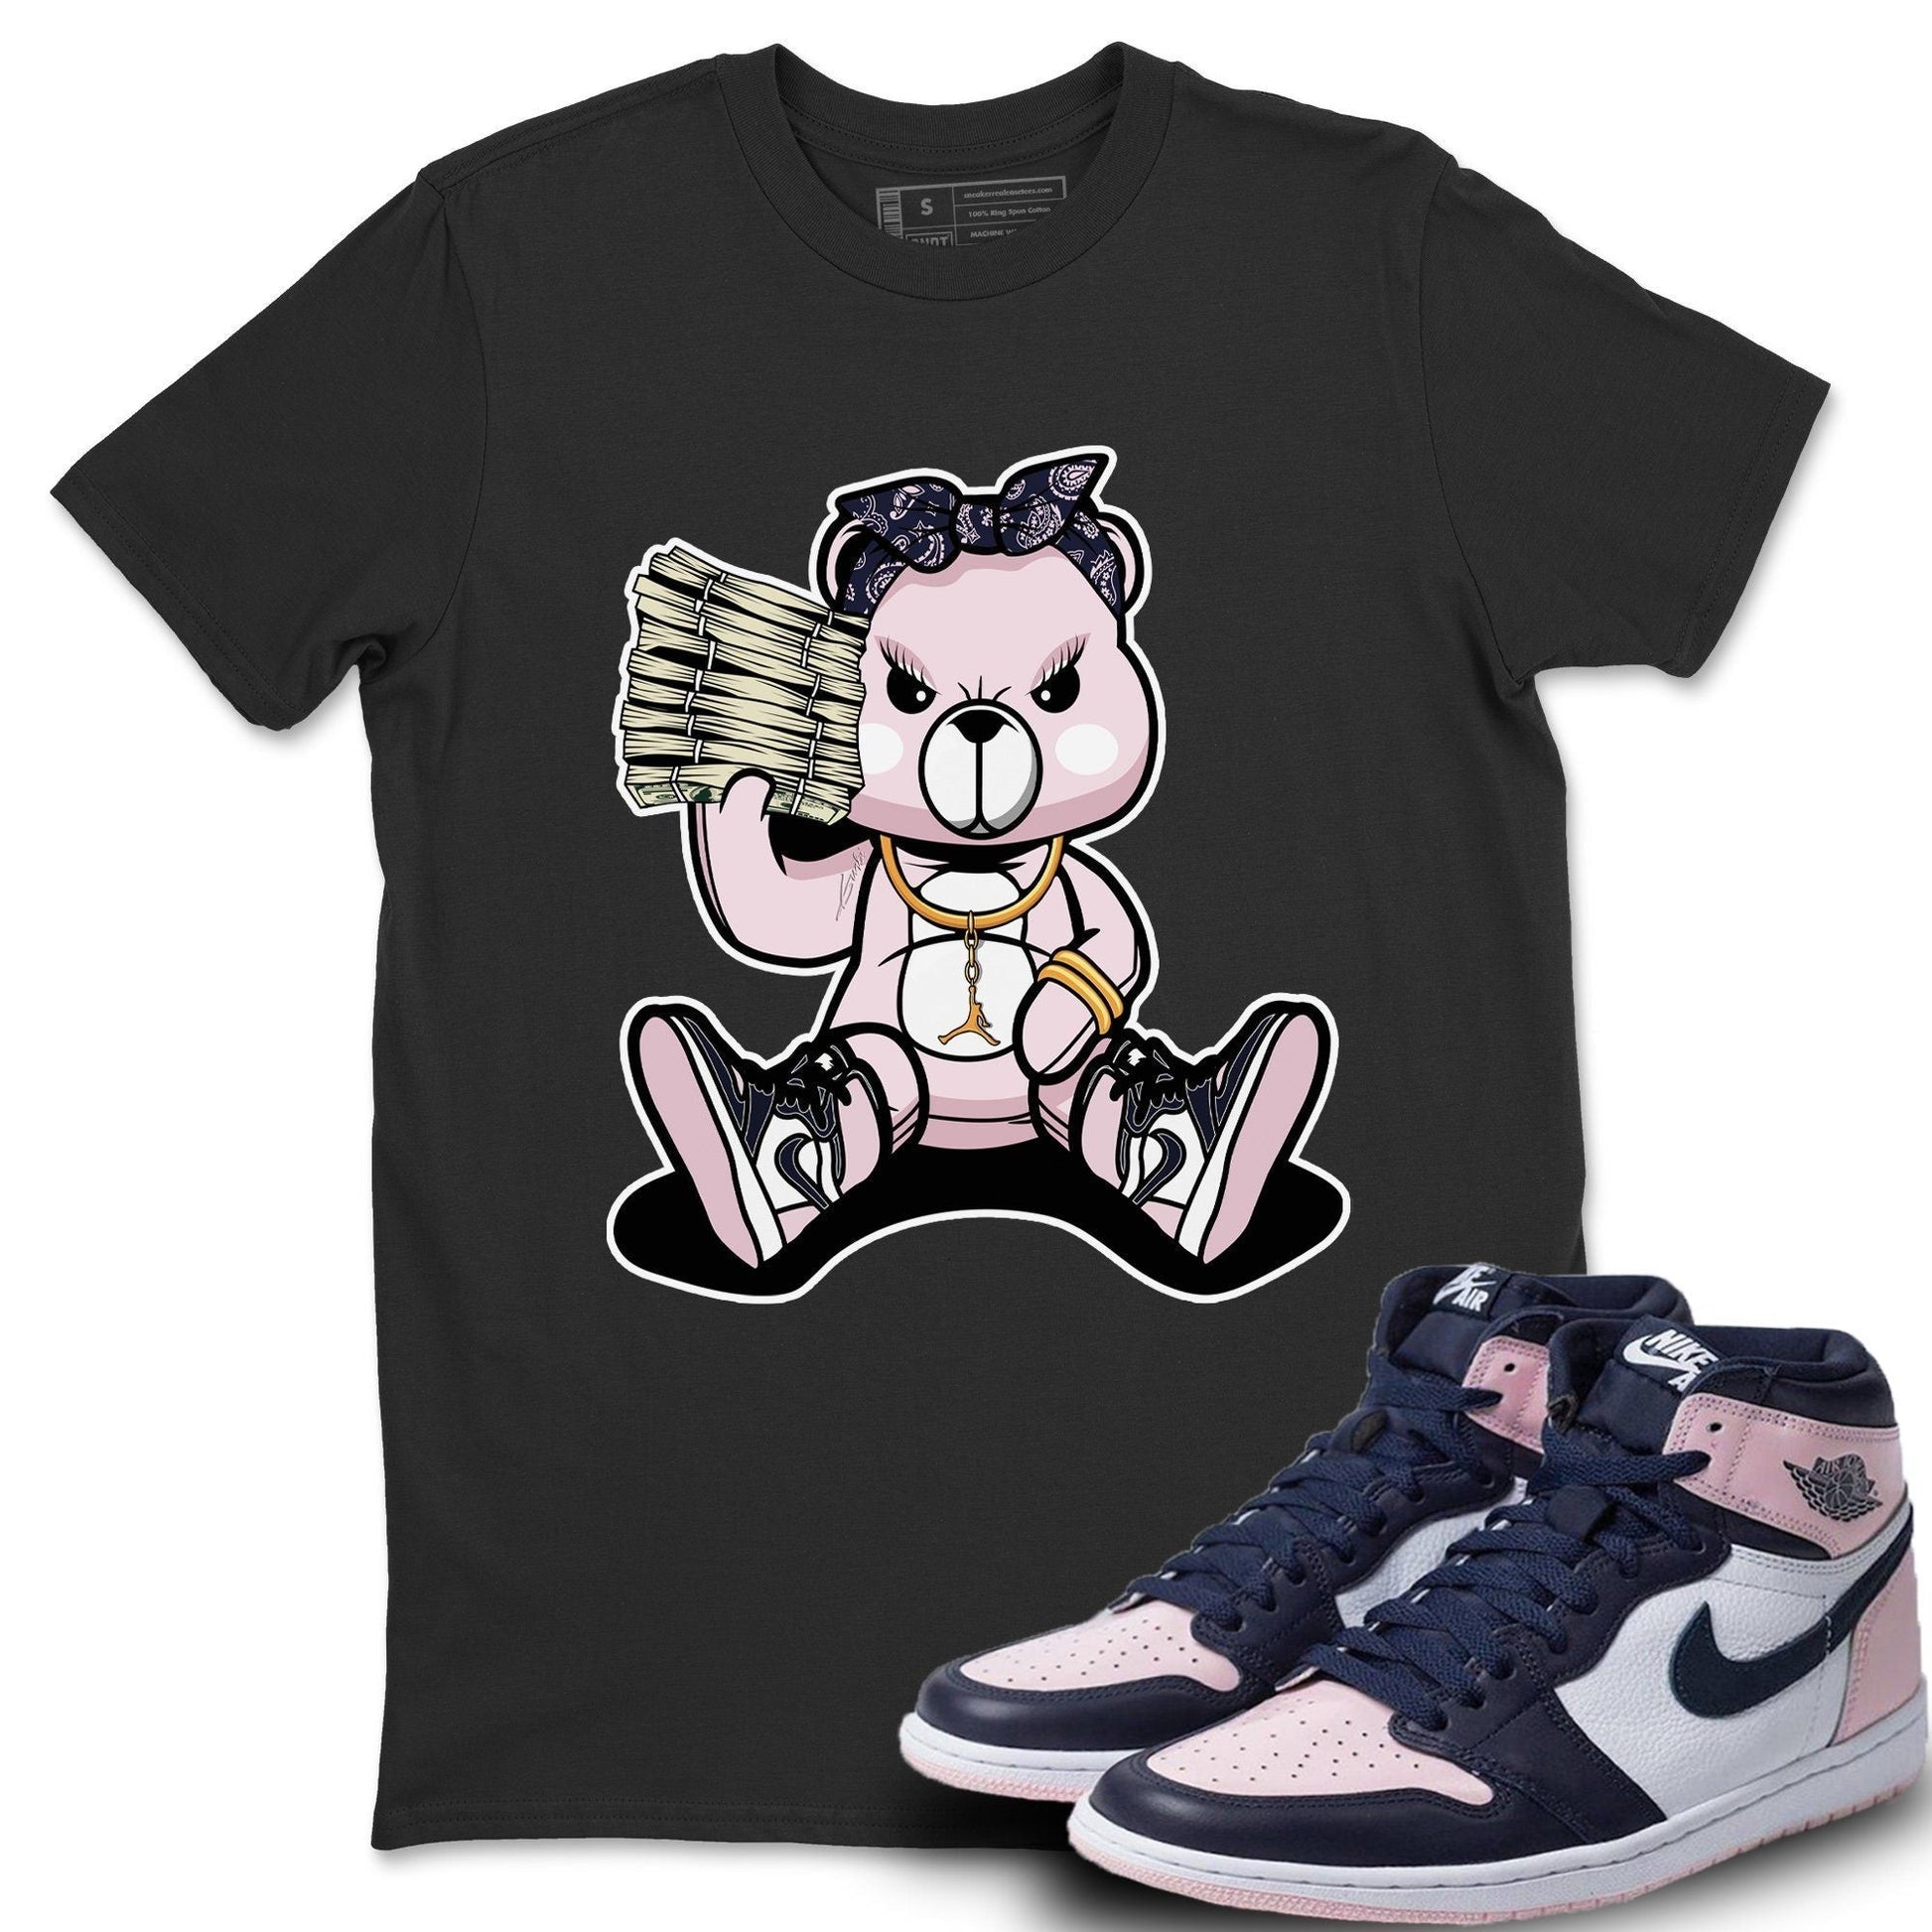 Jordan 1 Atmosphere Sneaker Match Tees Bad Baby Bear Sneaker Tees Jordan 1 Atmosphere Sneaker Release Tees Unisex Shirts